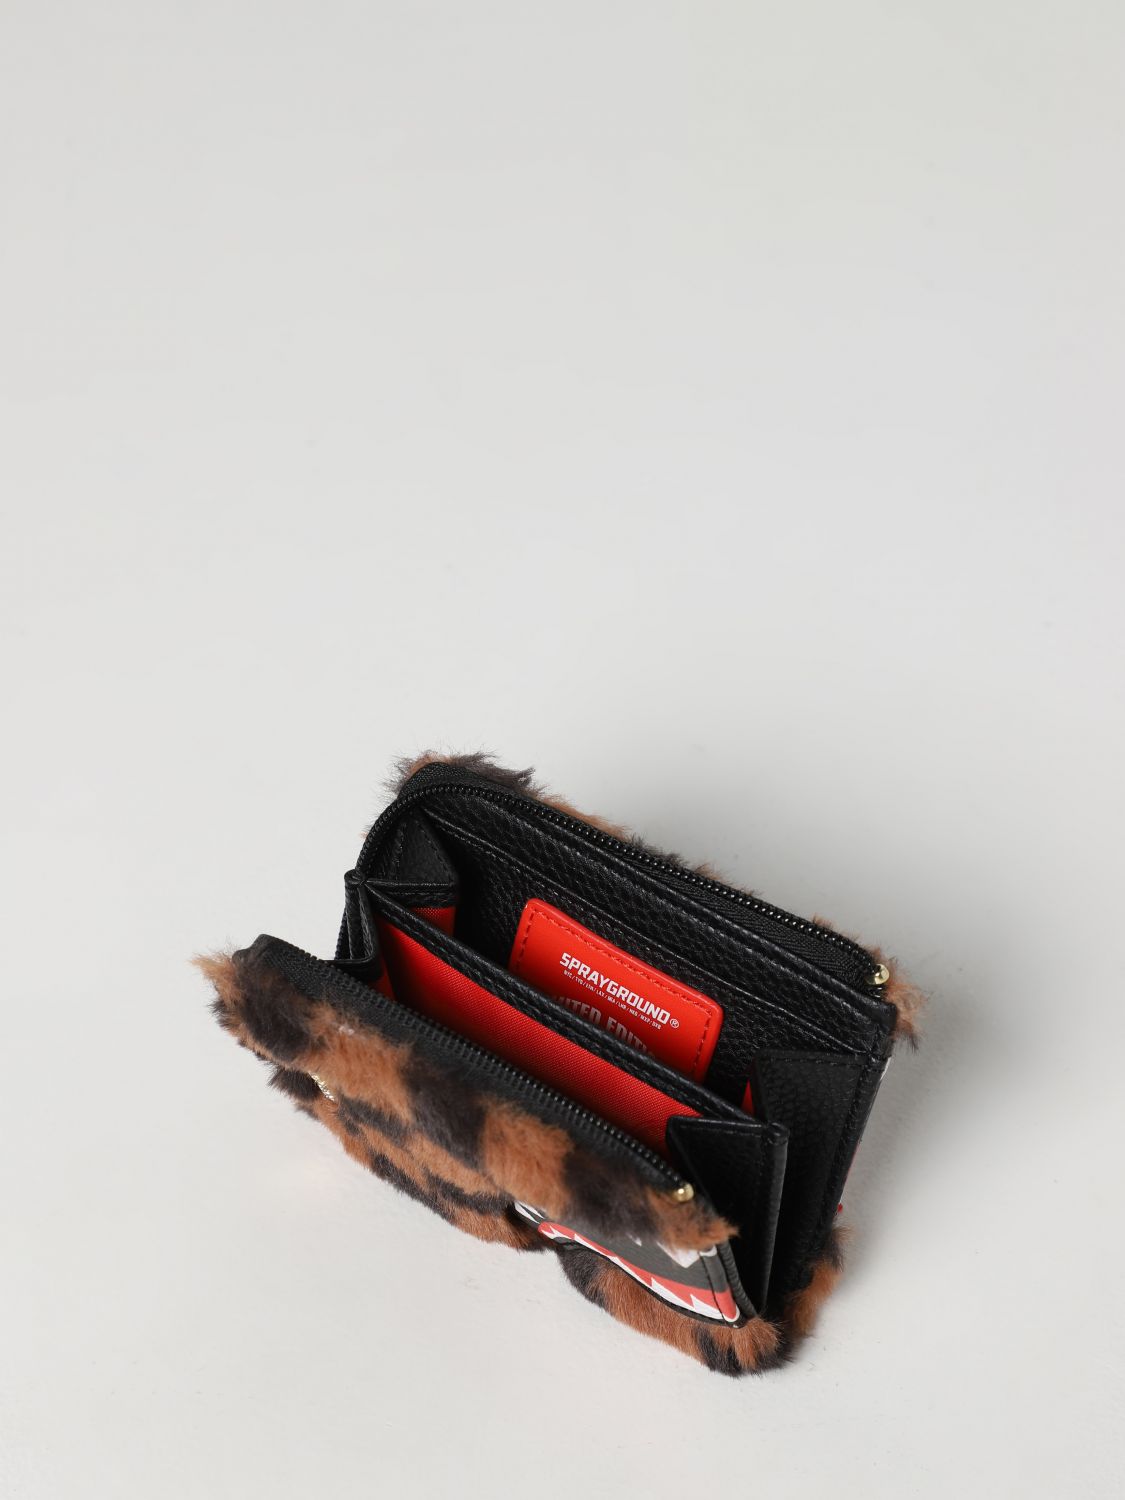 SPRAYGROUND: briefcase for man - Grey  Sprayground briefcase 910B5546NSZ  online at